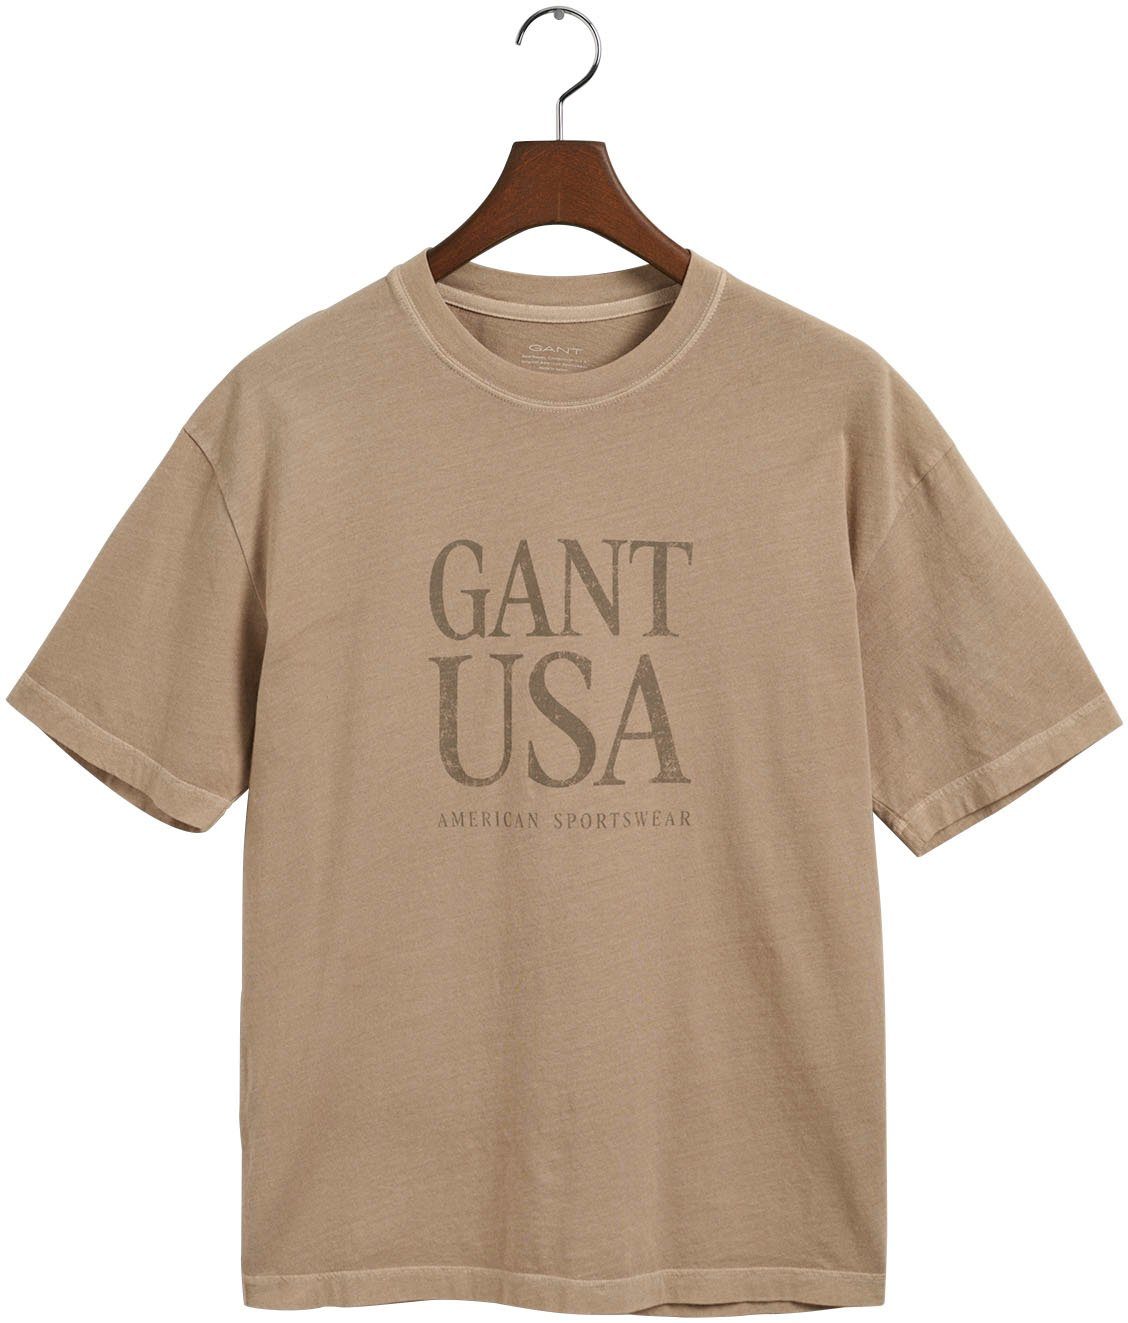 Gant T-Shirt beige